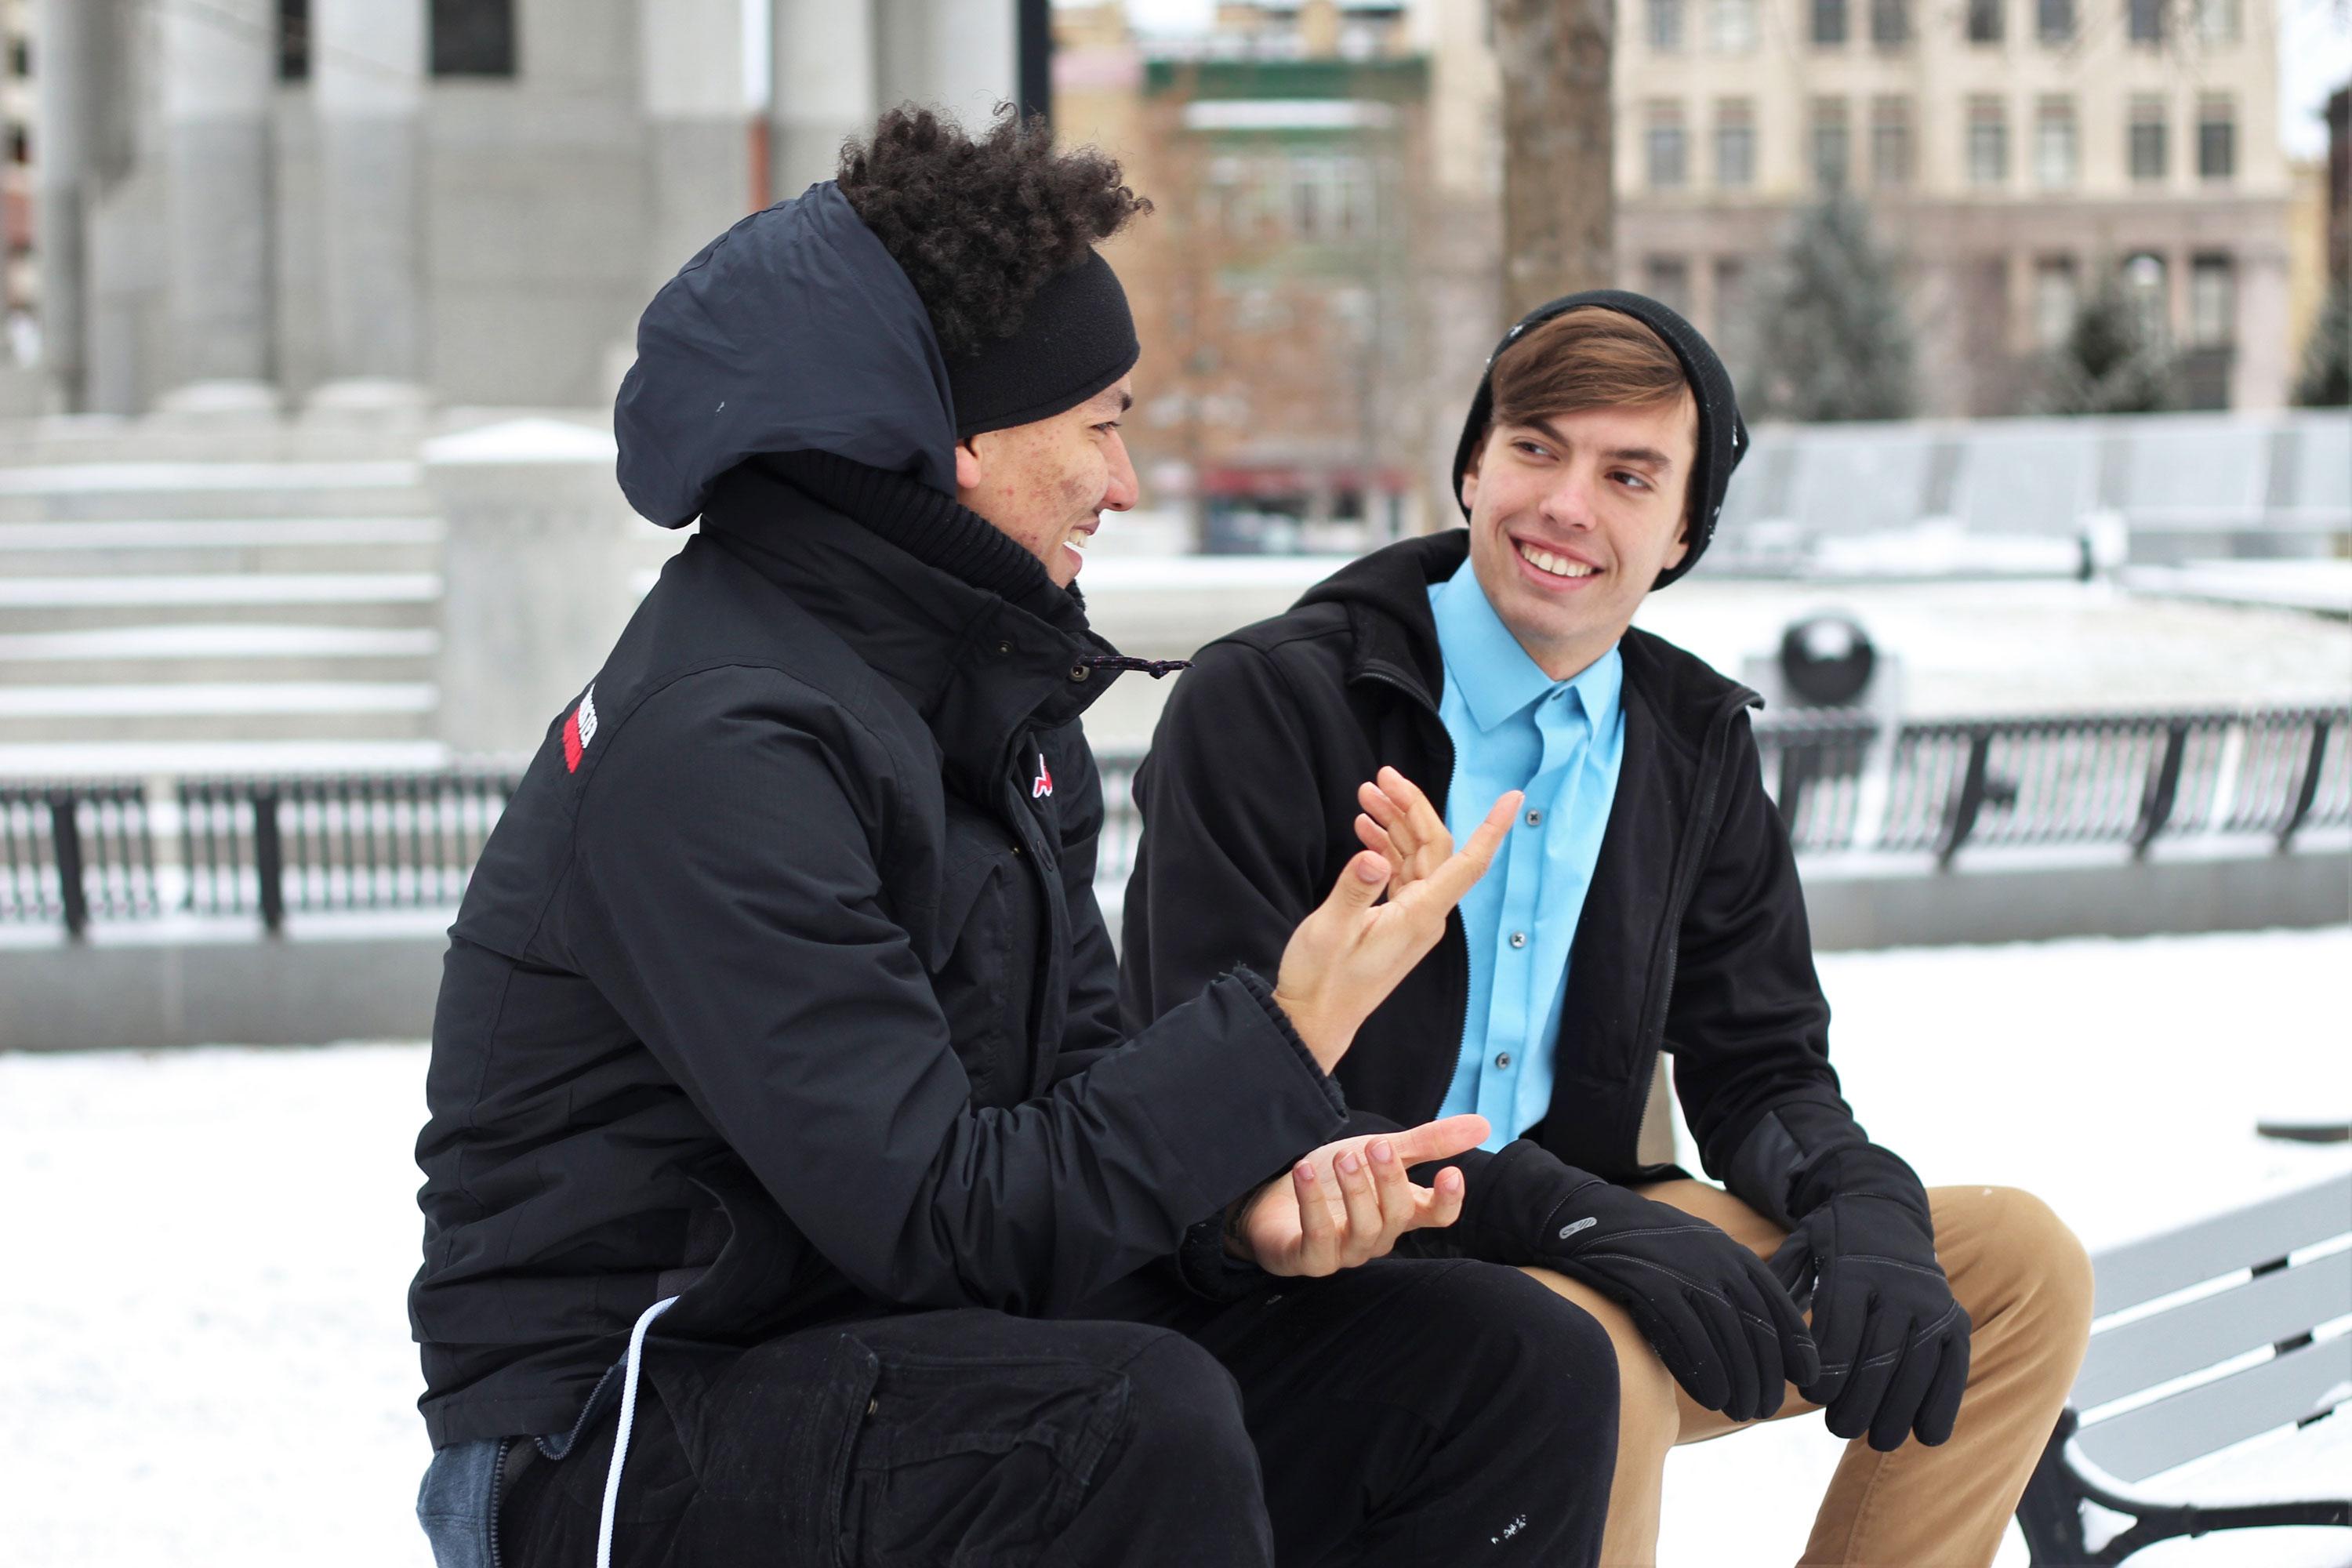 Two men talking outside in the winter